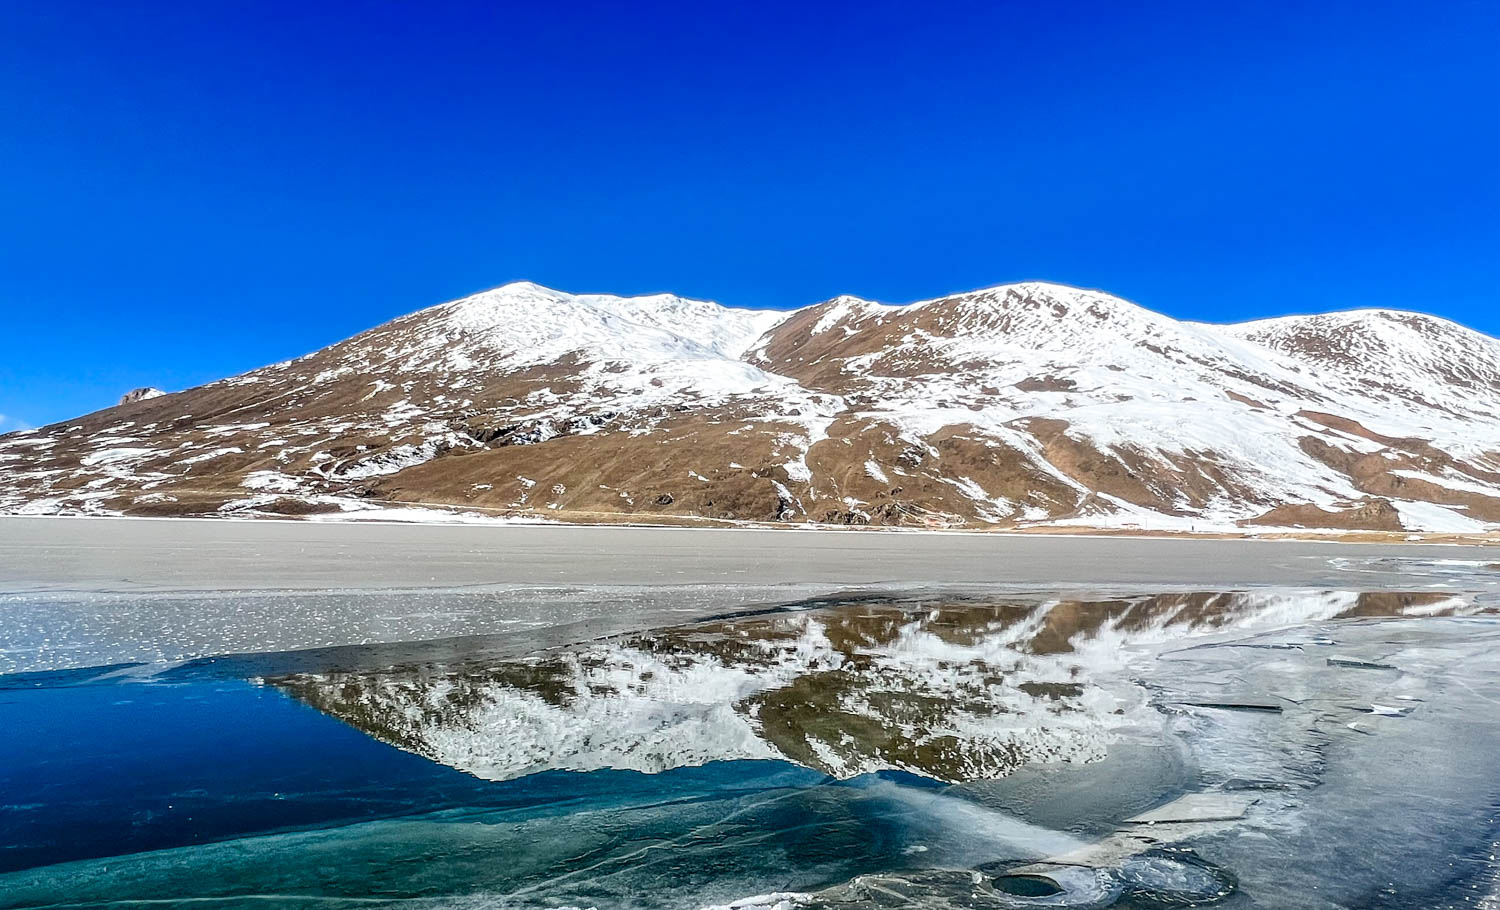 西藏自驾游第17天:仙境般的布托湖,不要门票,别被网络资料骗了